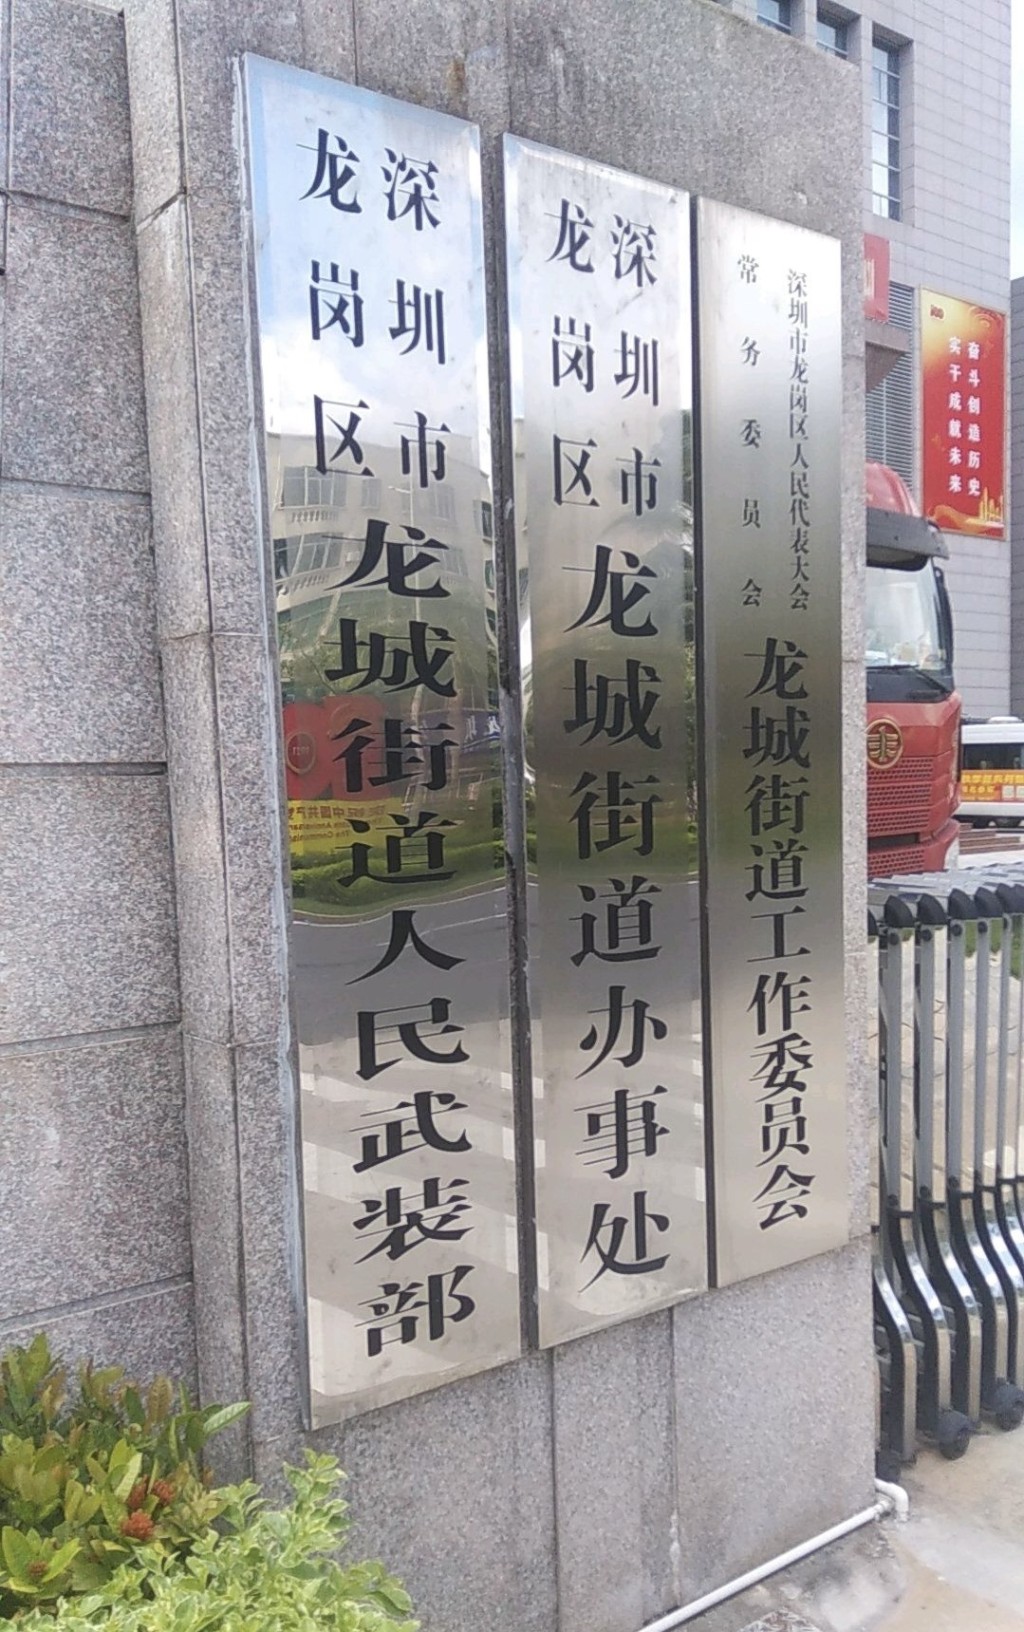 深圳的街道辦招聘港澳相關職位。圖為龍崗區的街道辦招牌。 